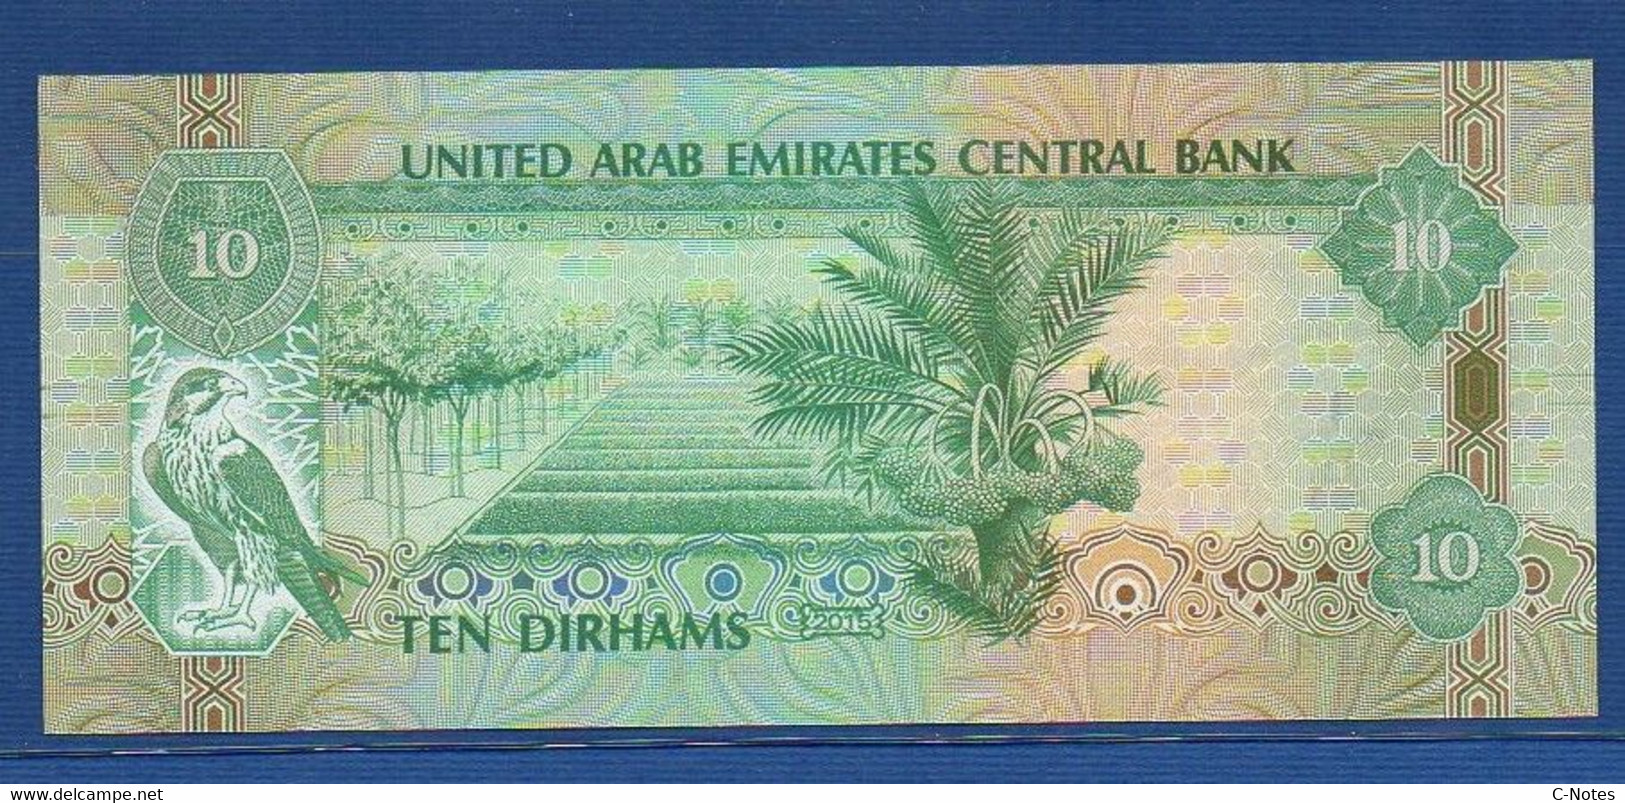 UNITED ARAB EMIRATES - P.27d – 10 DIRHAMS 2015 UNC Serie 158831182 - Ver. Arab. Emirate